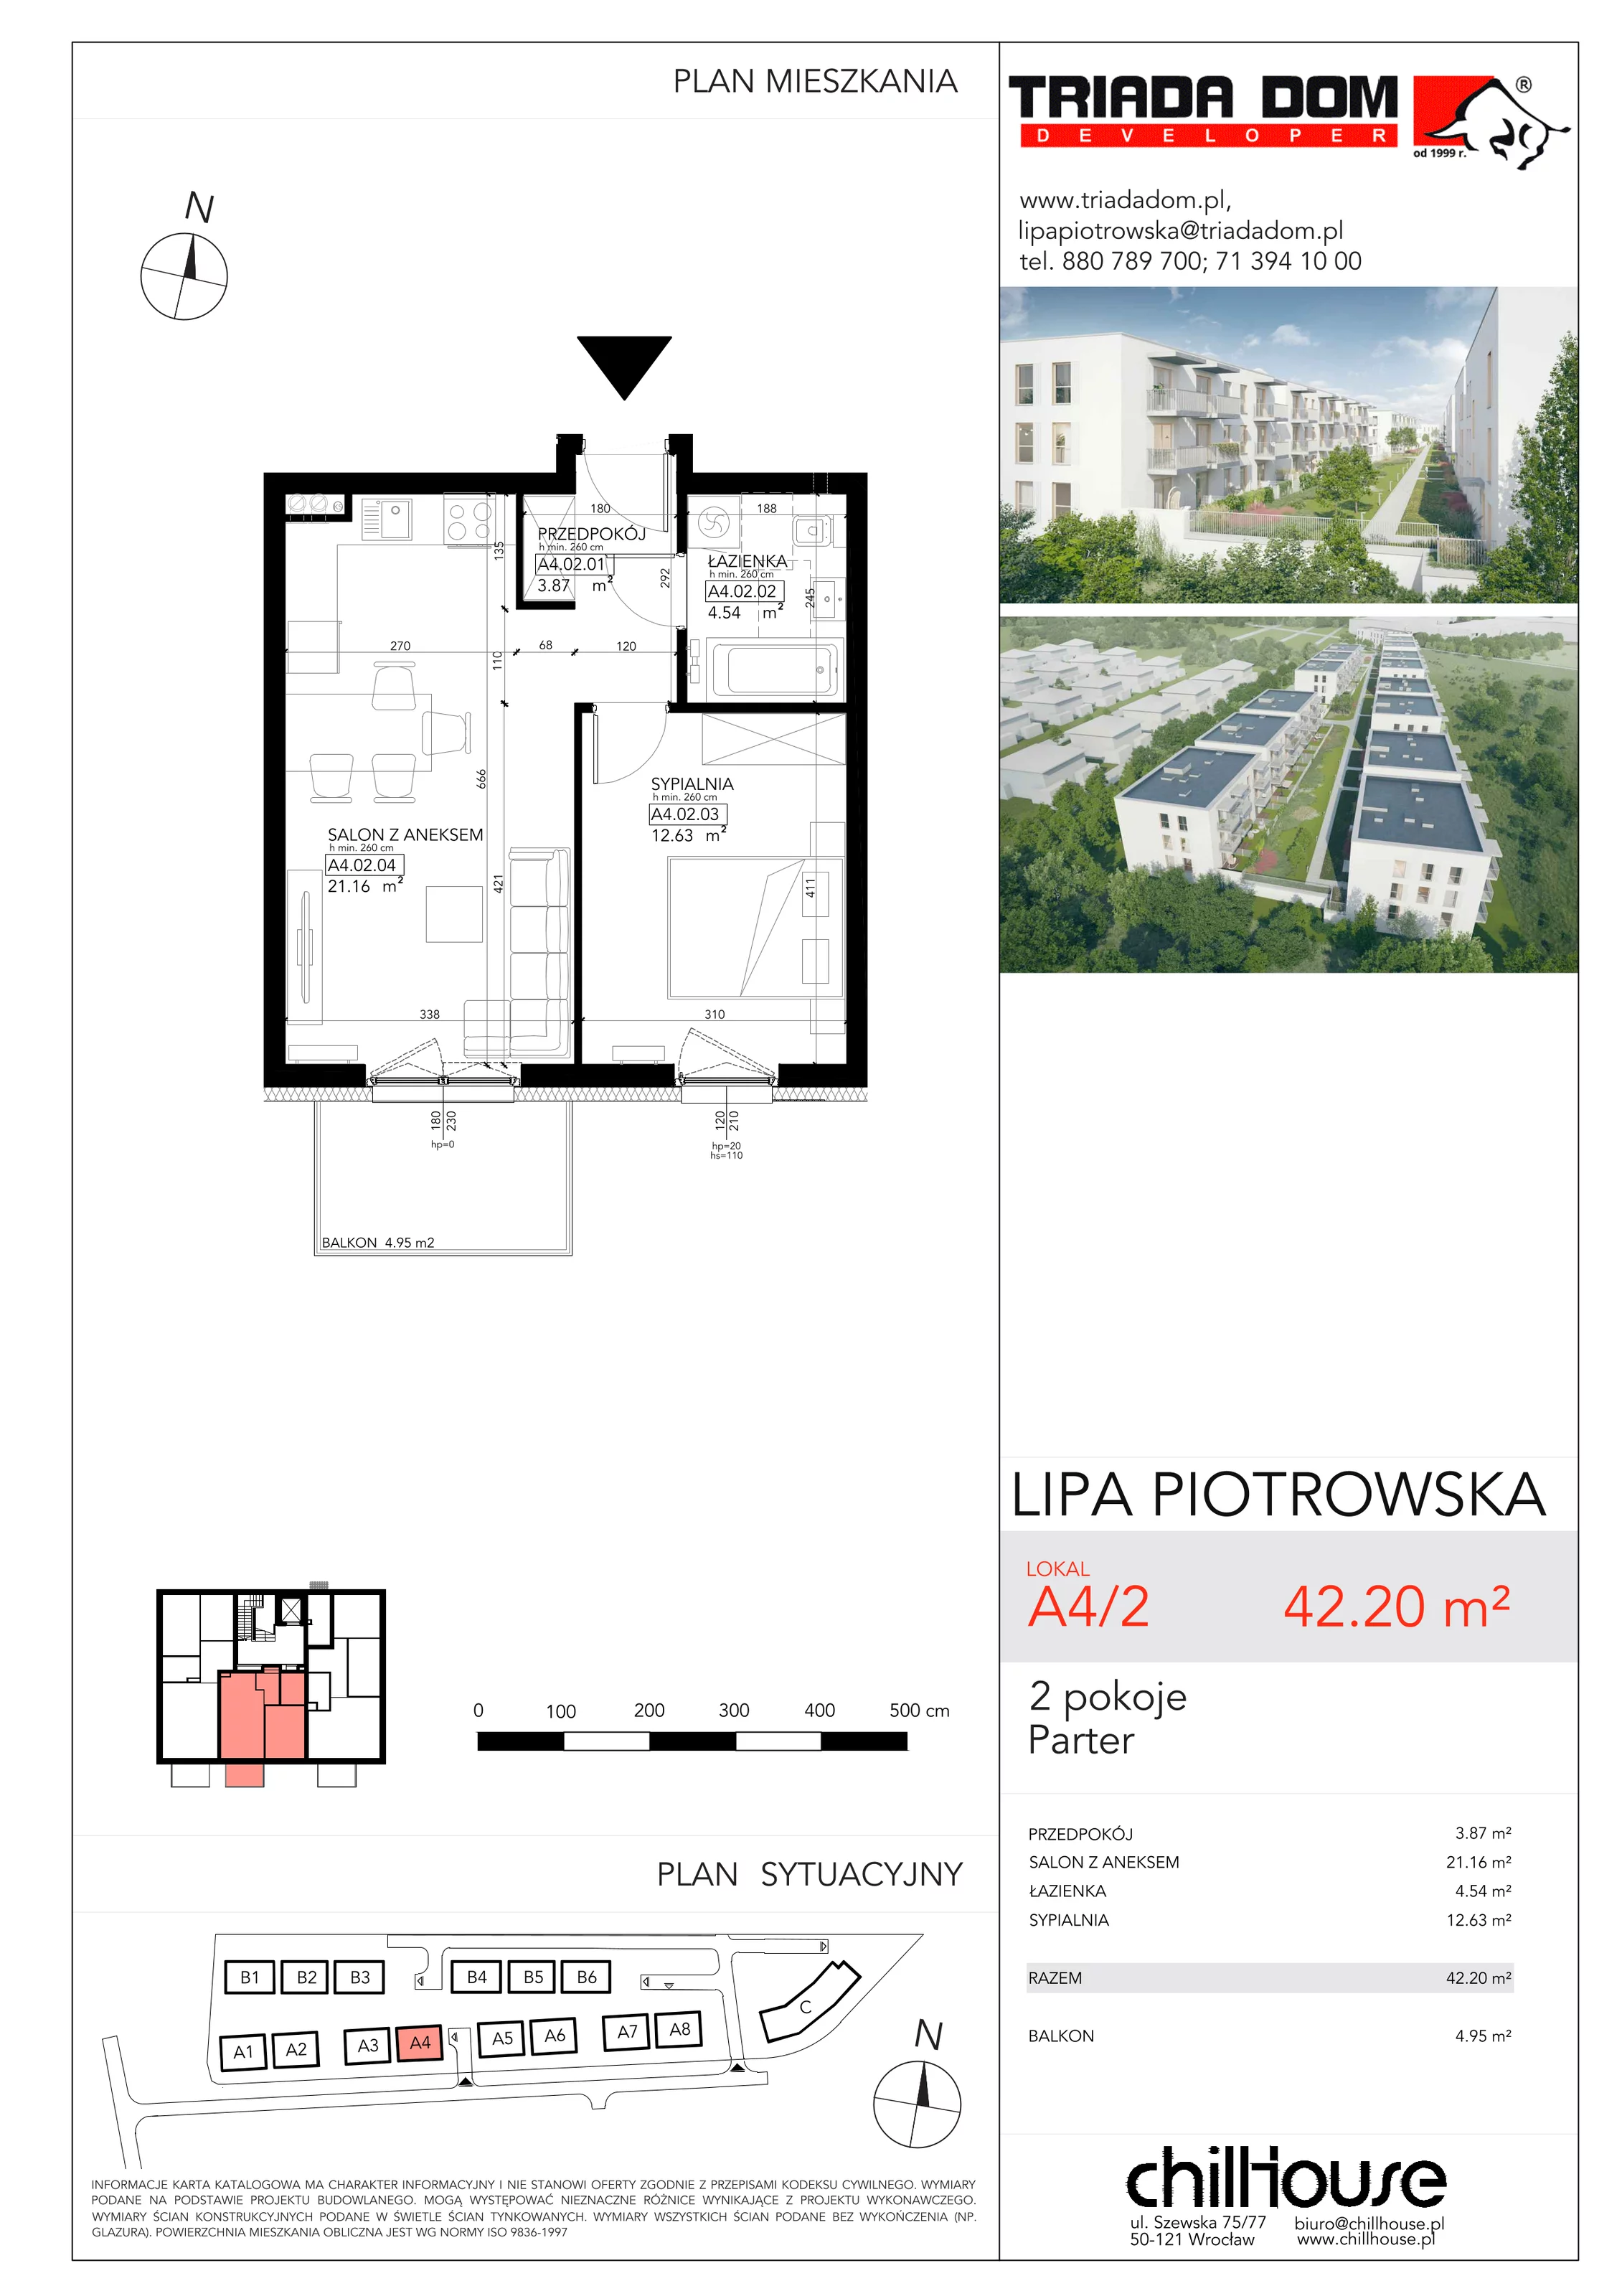 Mieszkanie 42,20 m², parter, oferta nr A42, Lipa Piotrowska, Wrocław, Lipa Piotrowska, ul. Lawendowa / Melisowa